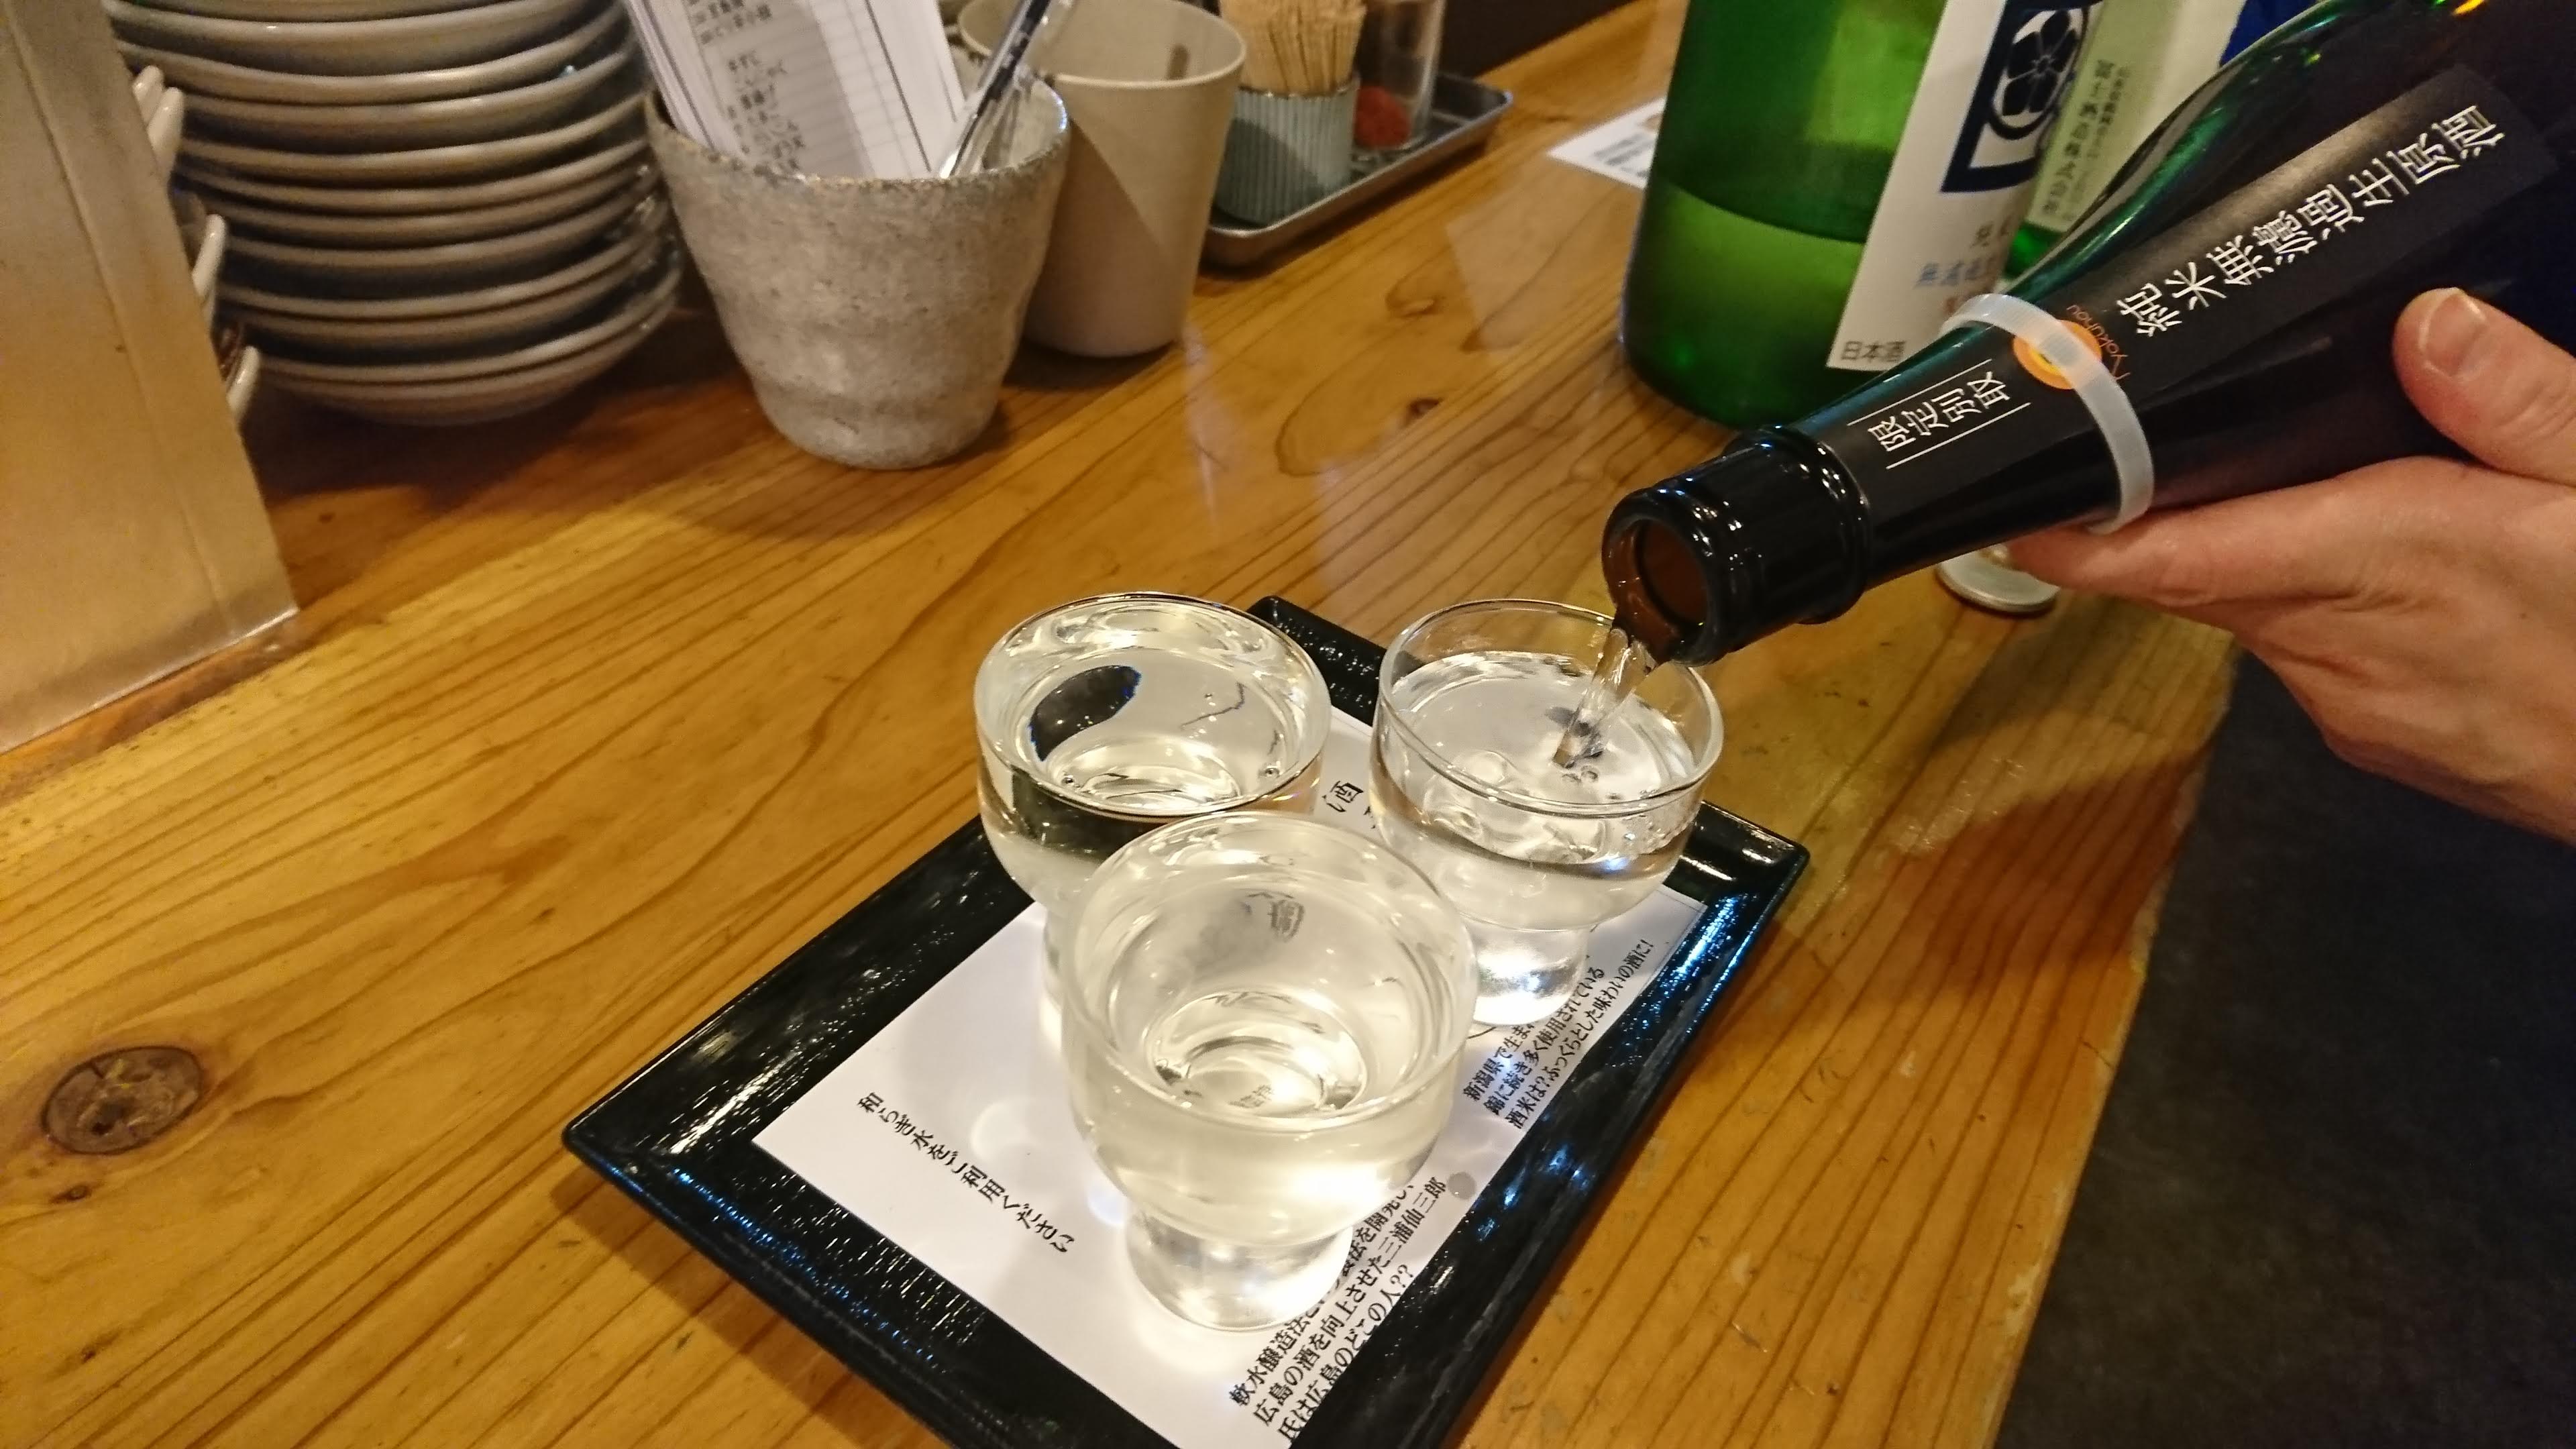 広島駅近くの立ち飲み屋 「 角打 福本屋 」にて 日本酒利き酒セットをいただきます。